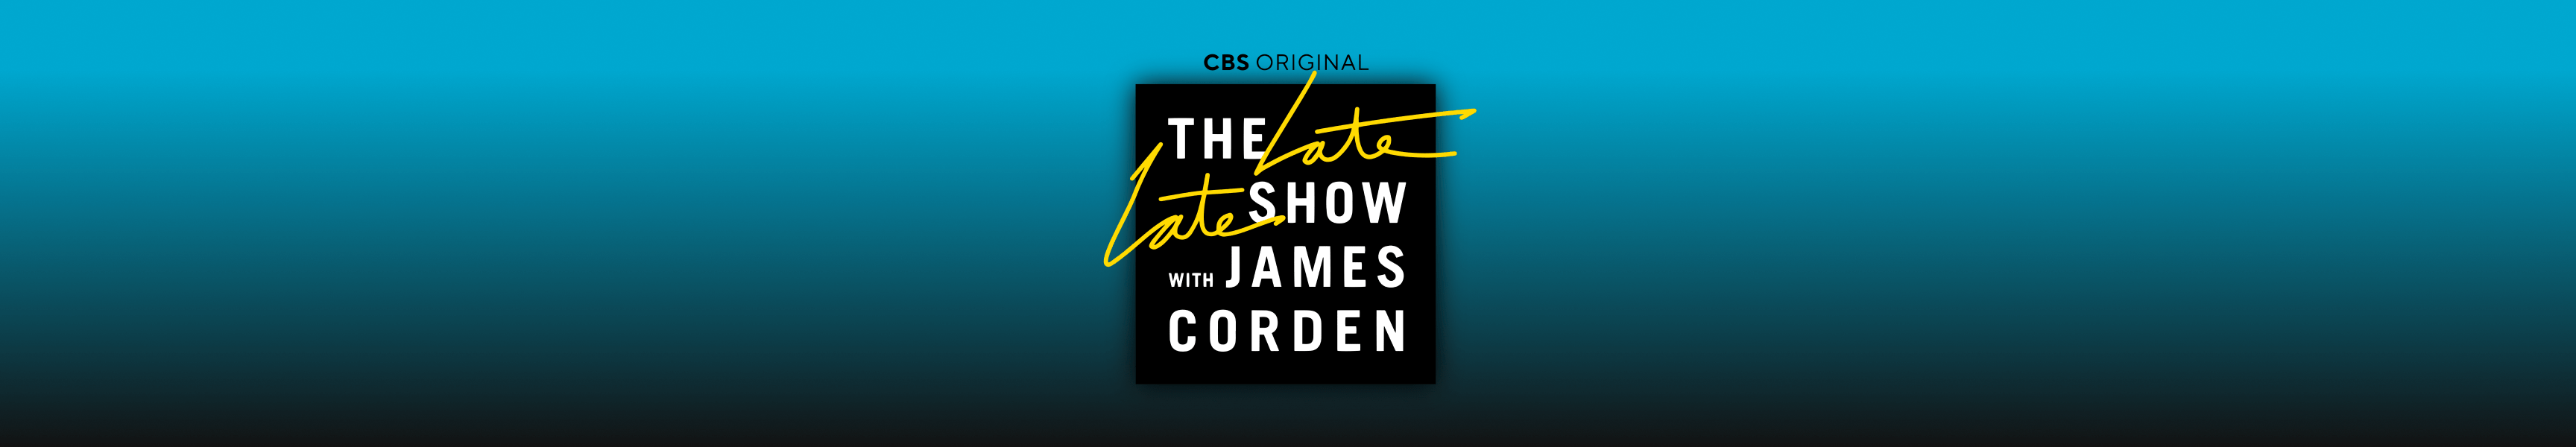 Late Late Show con James Corden